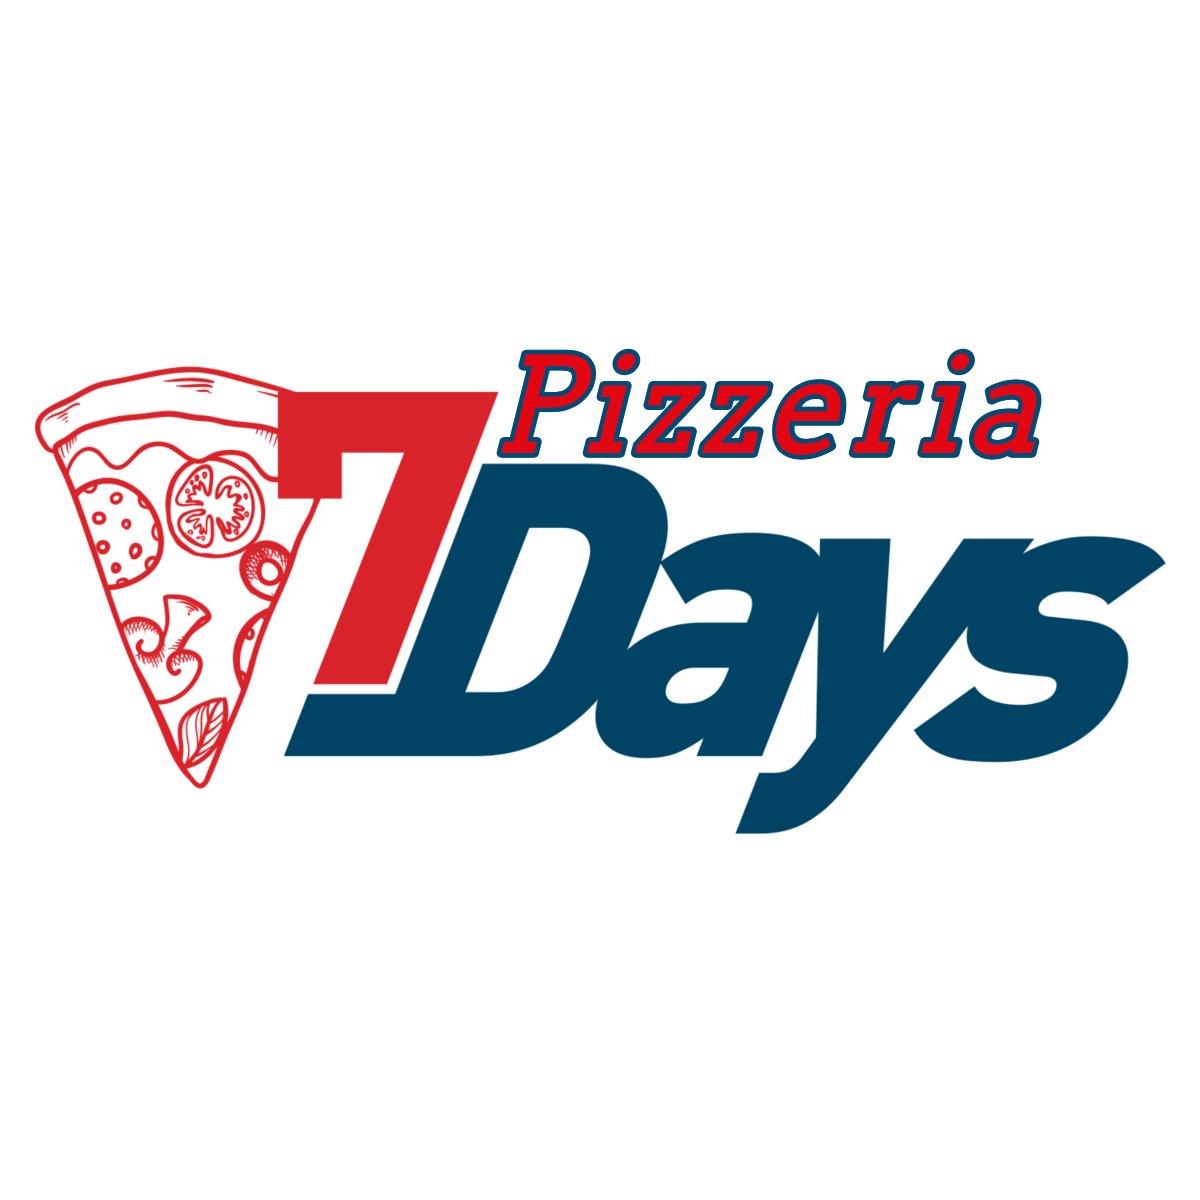 Pizzeria Seven Days, Pozzuoli